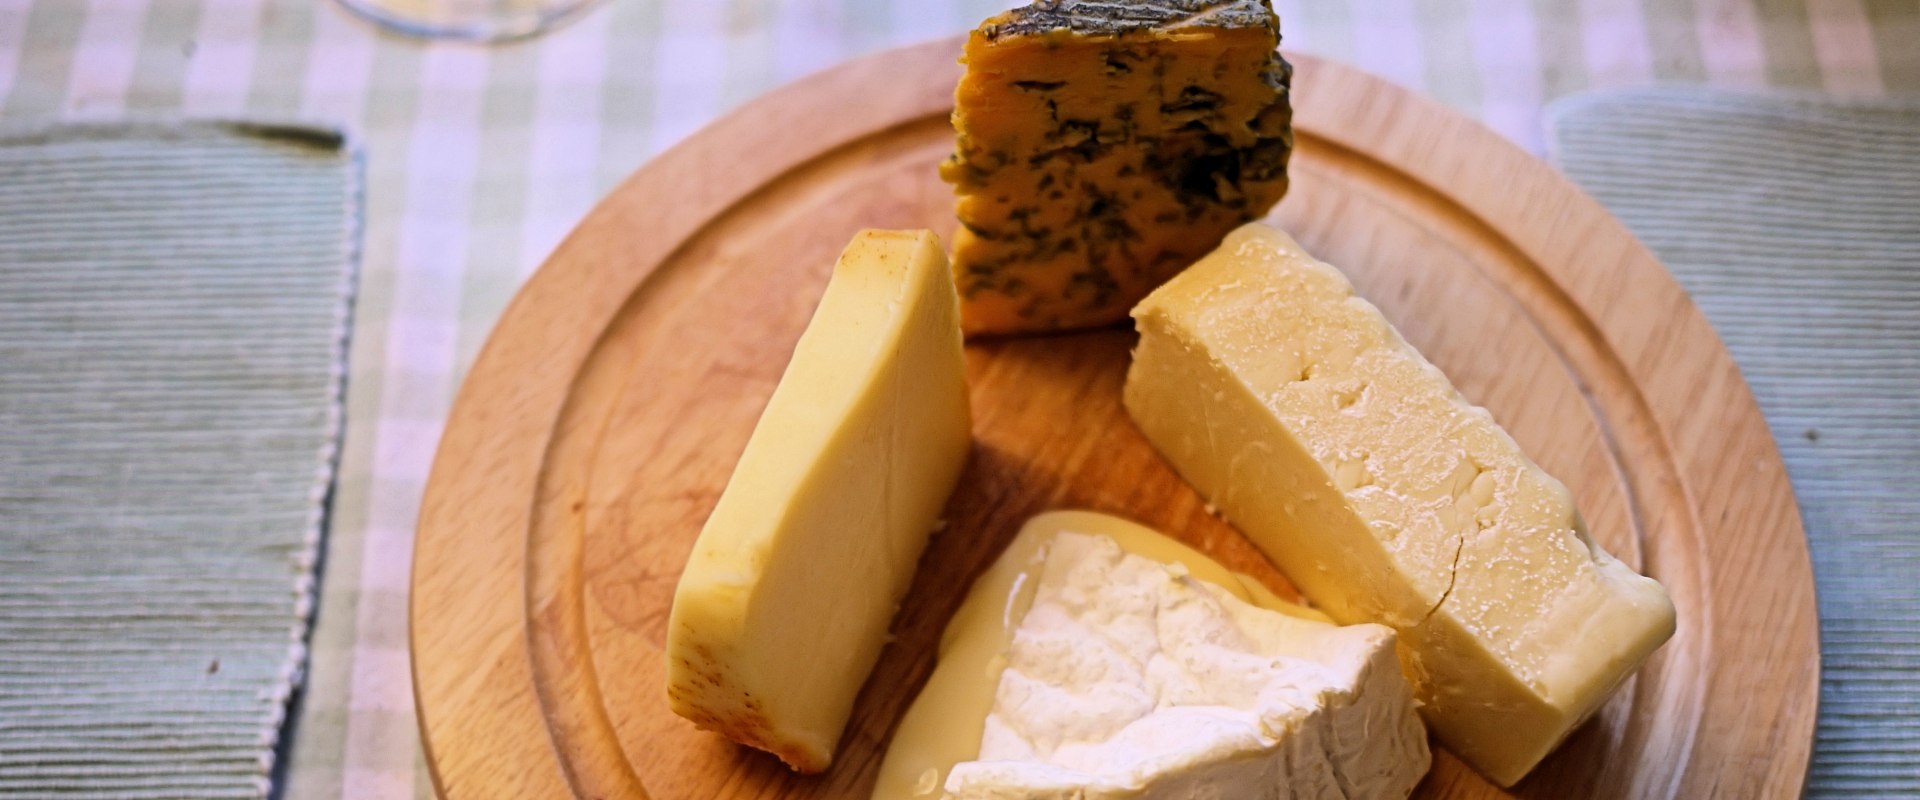 À la découverte des délicieux accords avec le fromage de montagne